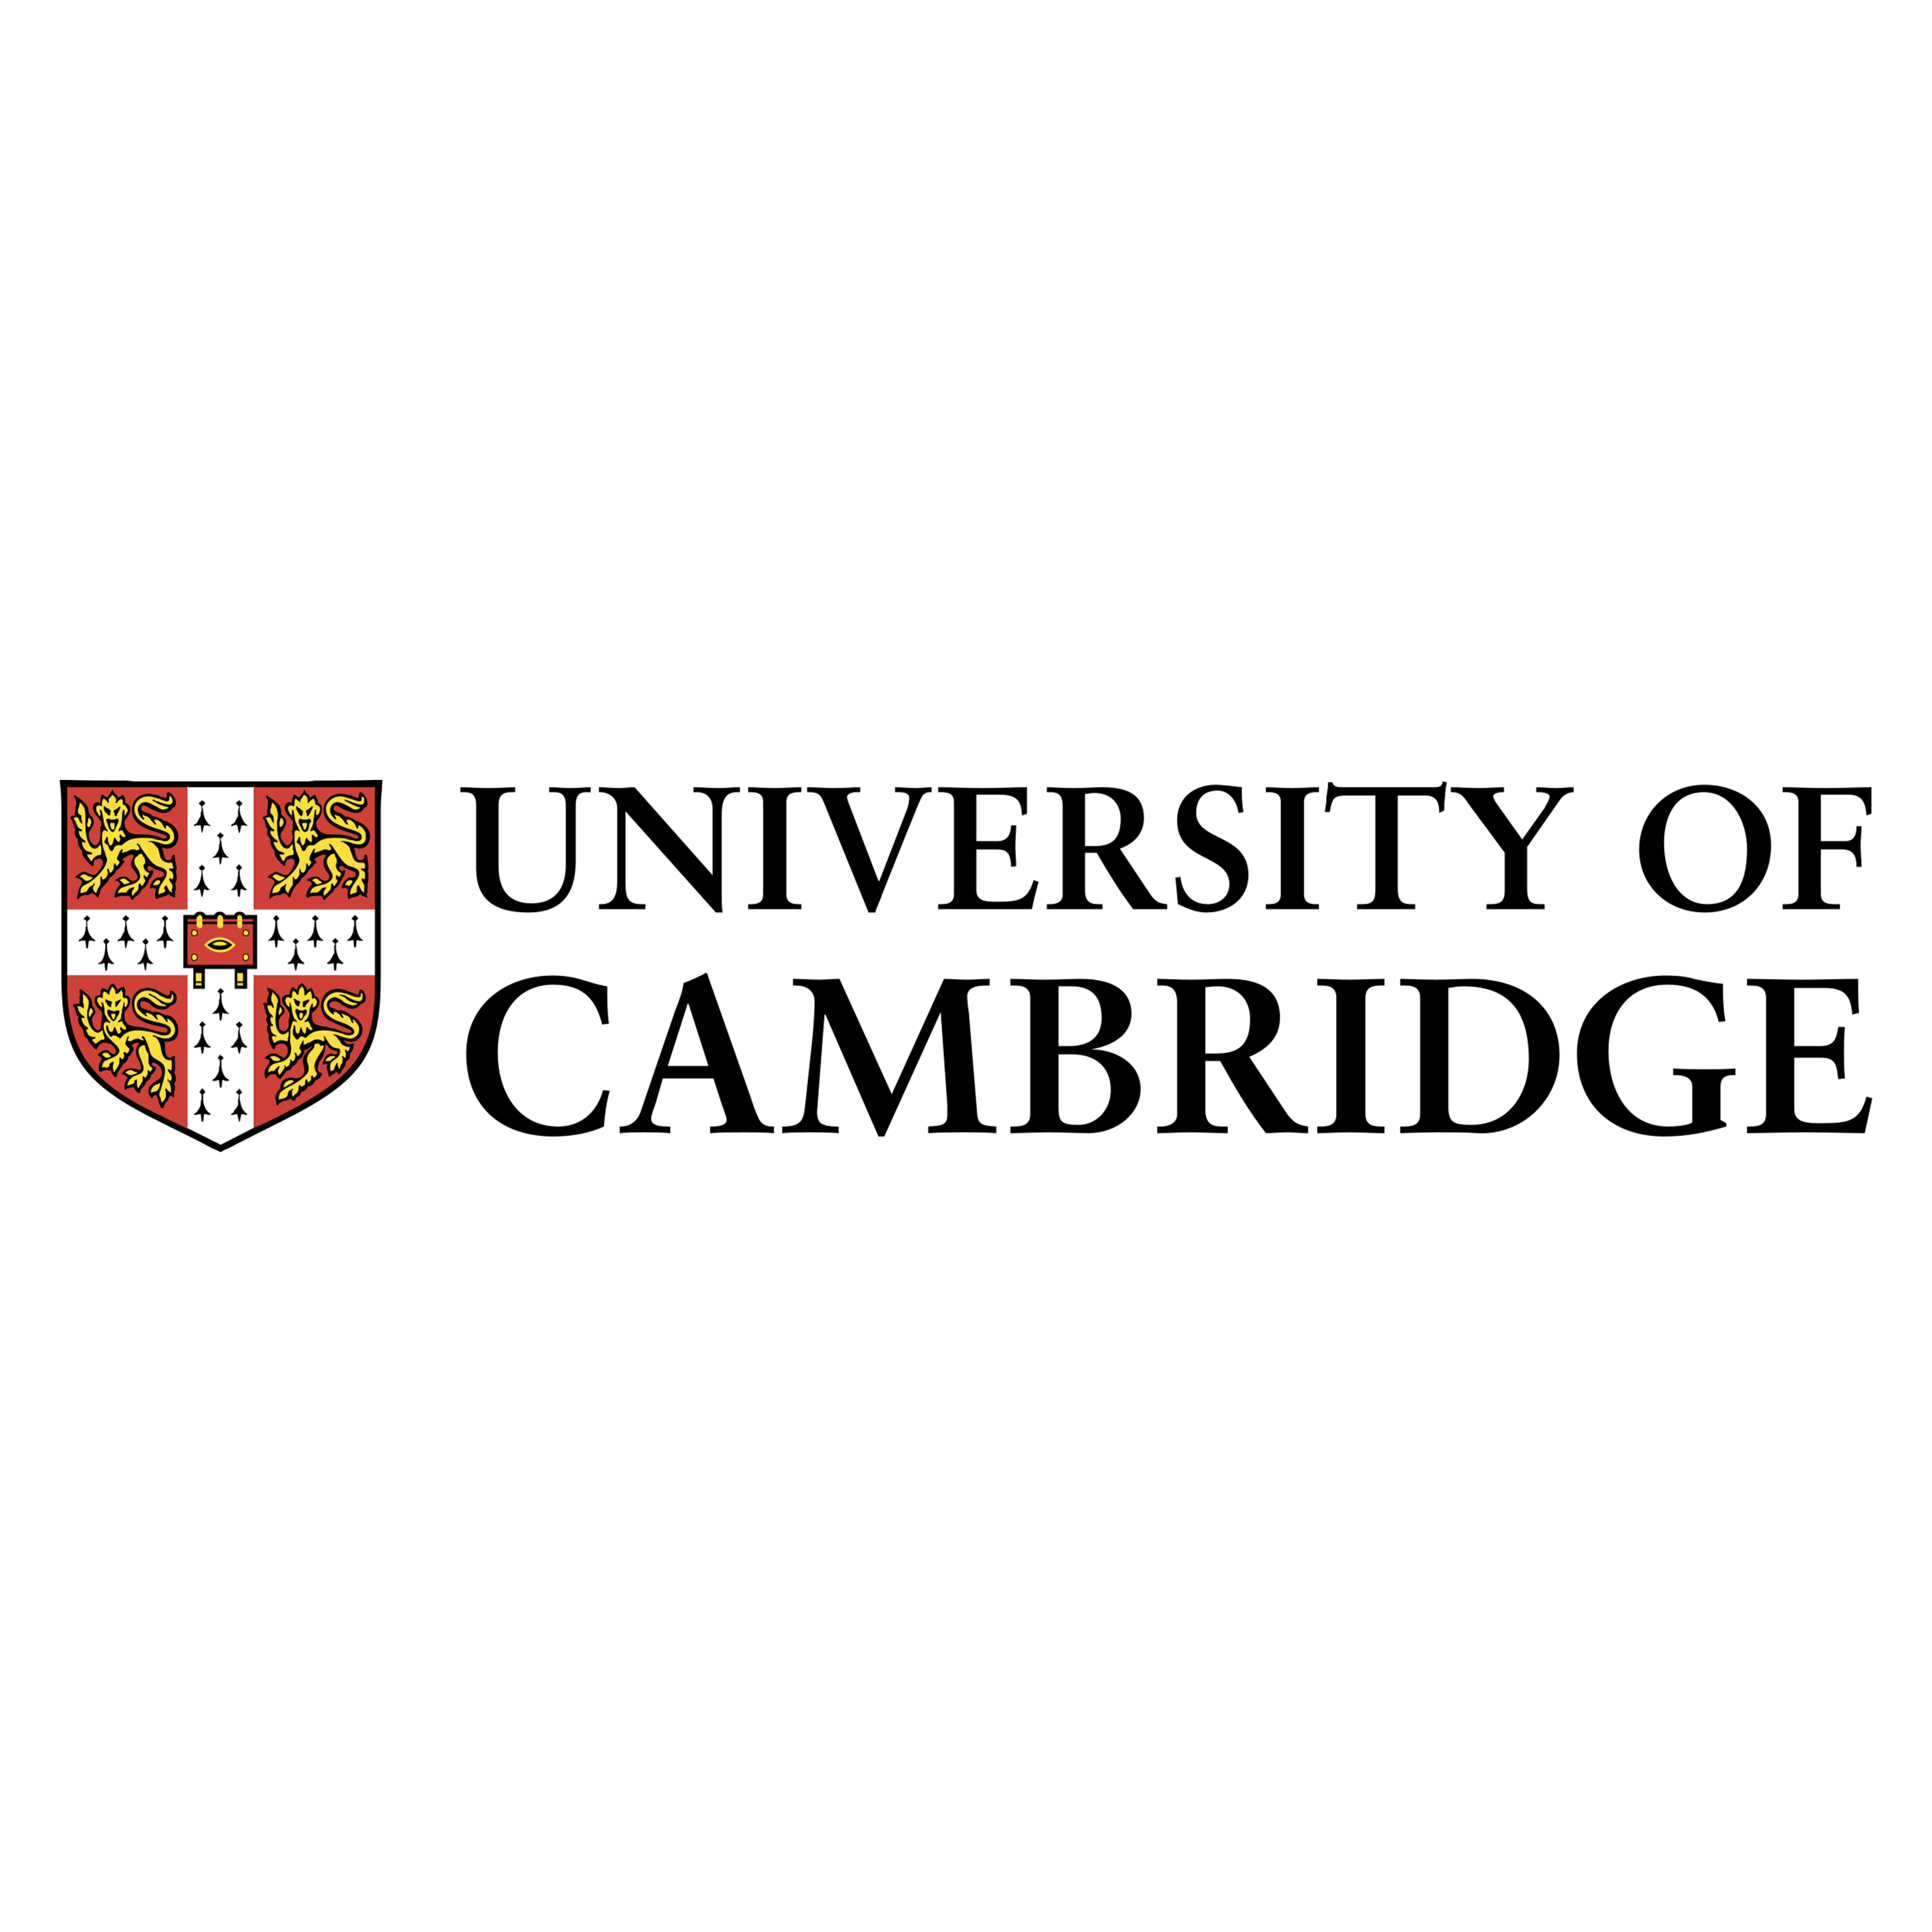 Https cambridge org. Кембридж университет лого. Кембриджский университет эмблема. University of Cambridge логотип. Кембриджский университет герб.